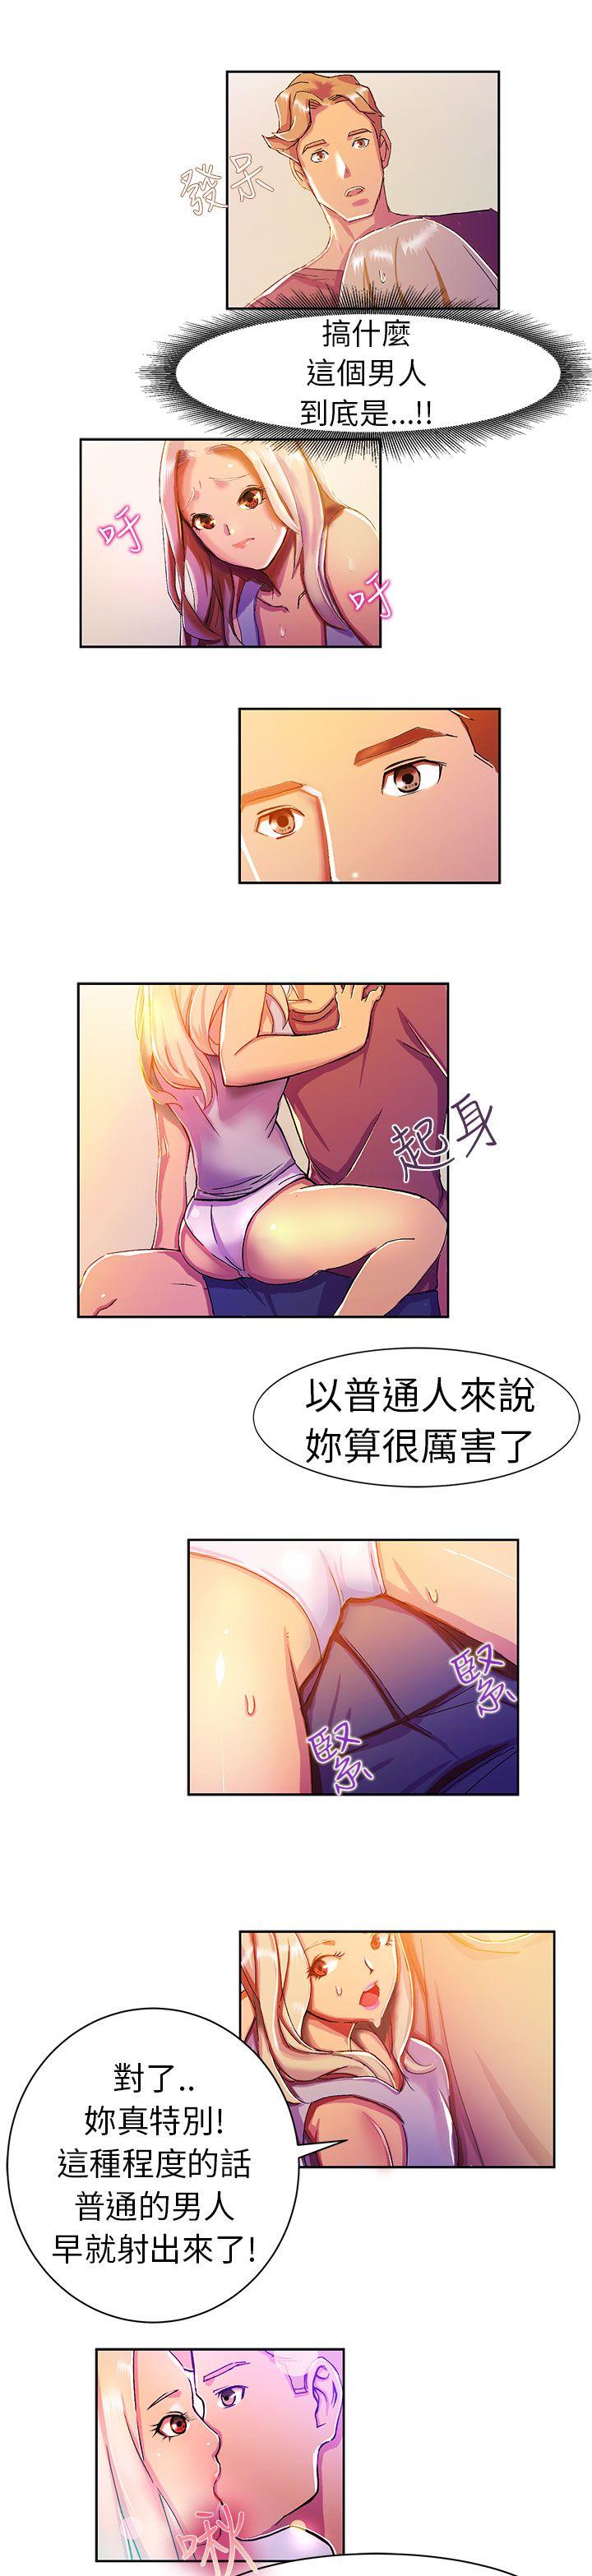 韩国污漫画 派愛達人 叫外卖的女孩(下) 6